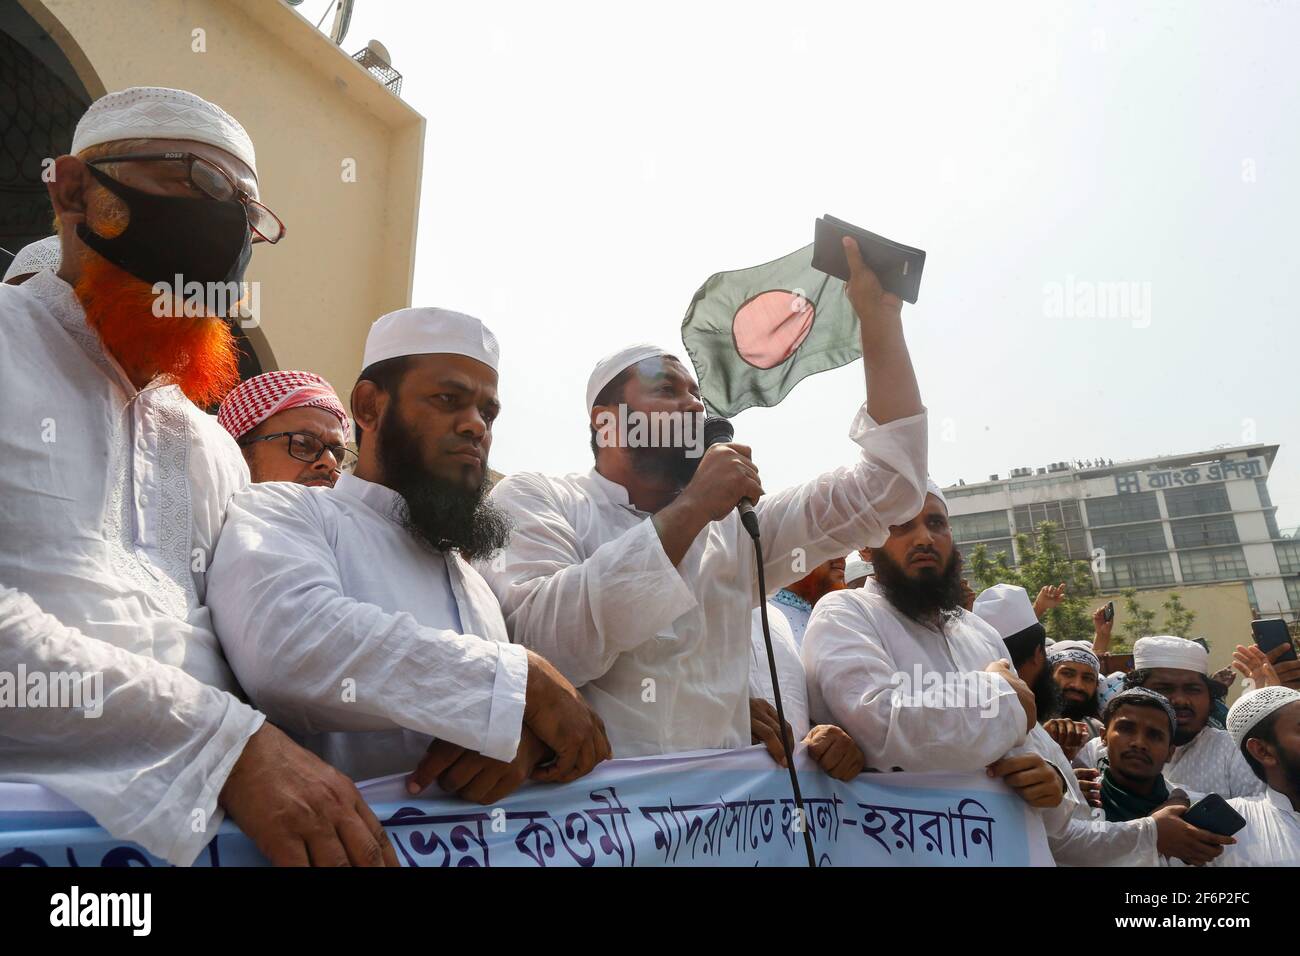 2 avril 2021, Dhaka, Bangladesh: Hefajat-e-Islam Bangladesh a organisé une manifestation devant la mosquée nationale Baitul Mukarram pour protester contre la mort de ses militants lors d'affrontements avec des agents de police pendant trois jours, à Dhaka, au Bangladesh, le 2 avril 2021. (Image crédit: © Suvra Kanti Das/ZUMA Wire) Banque D'Images